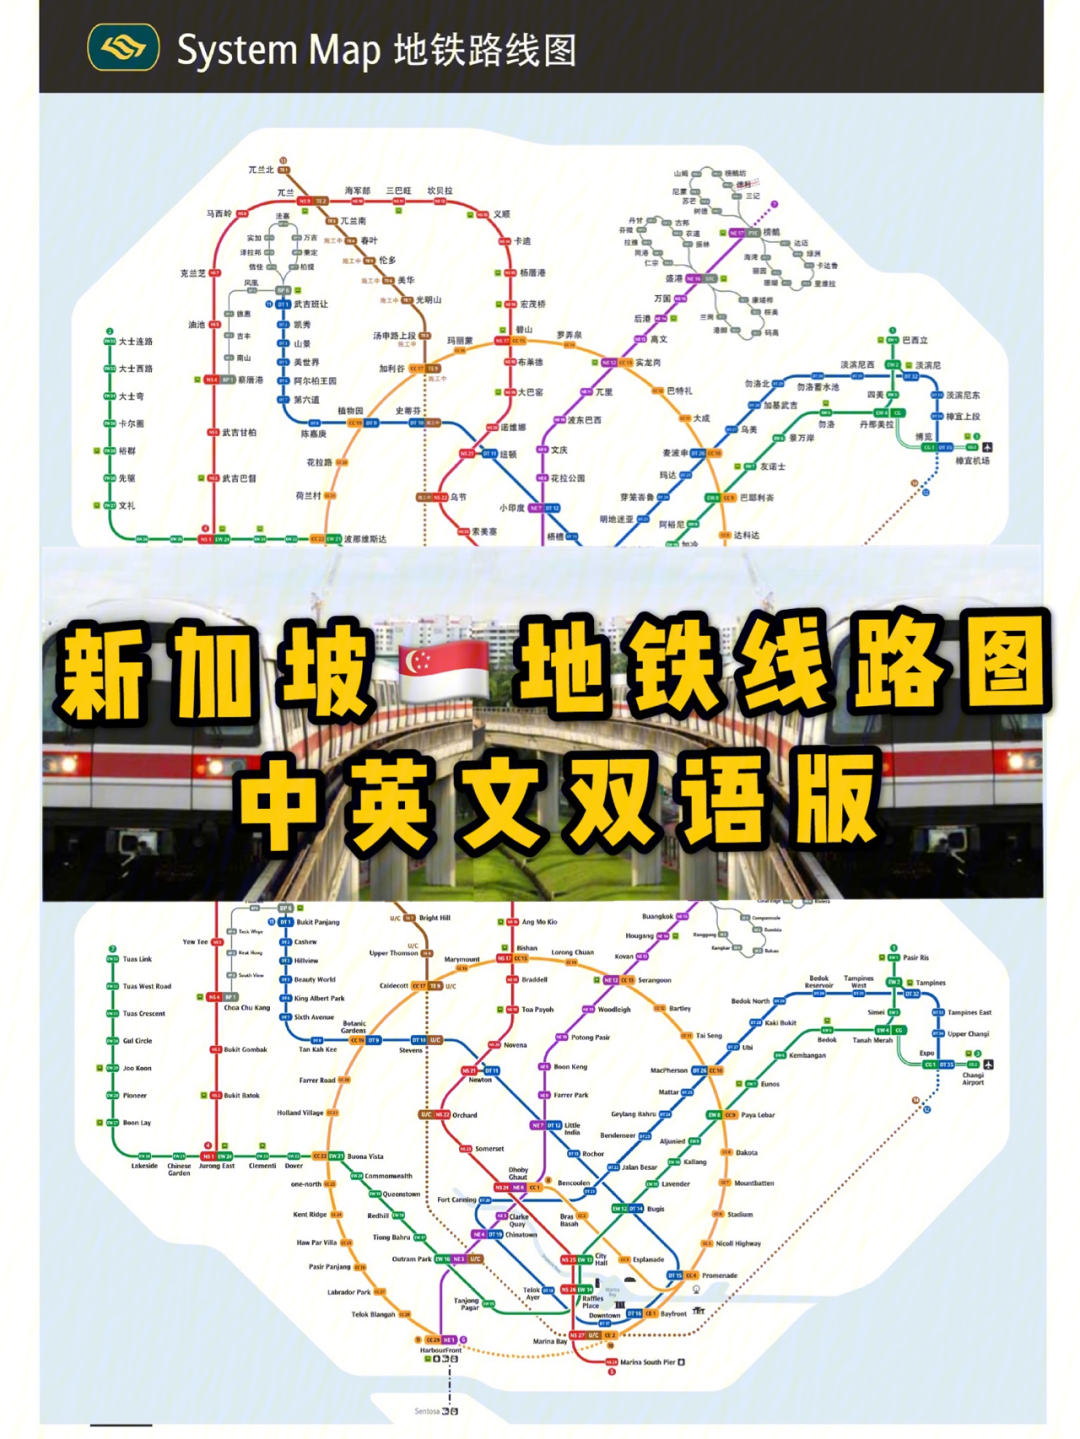 华人到新加坡必须get的地铁站01中英文名